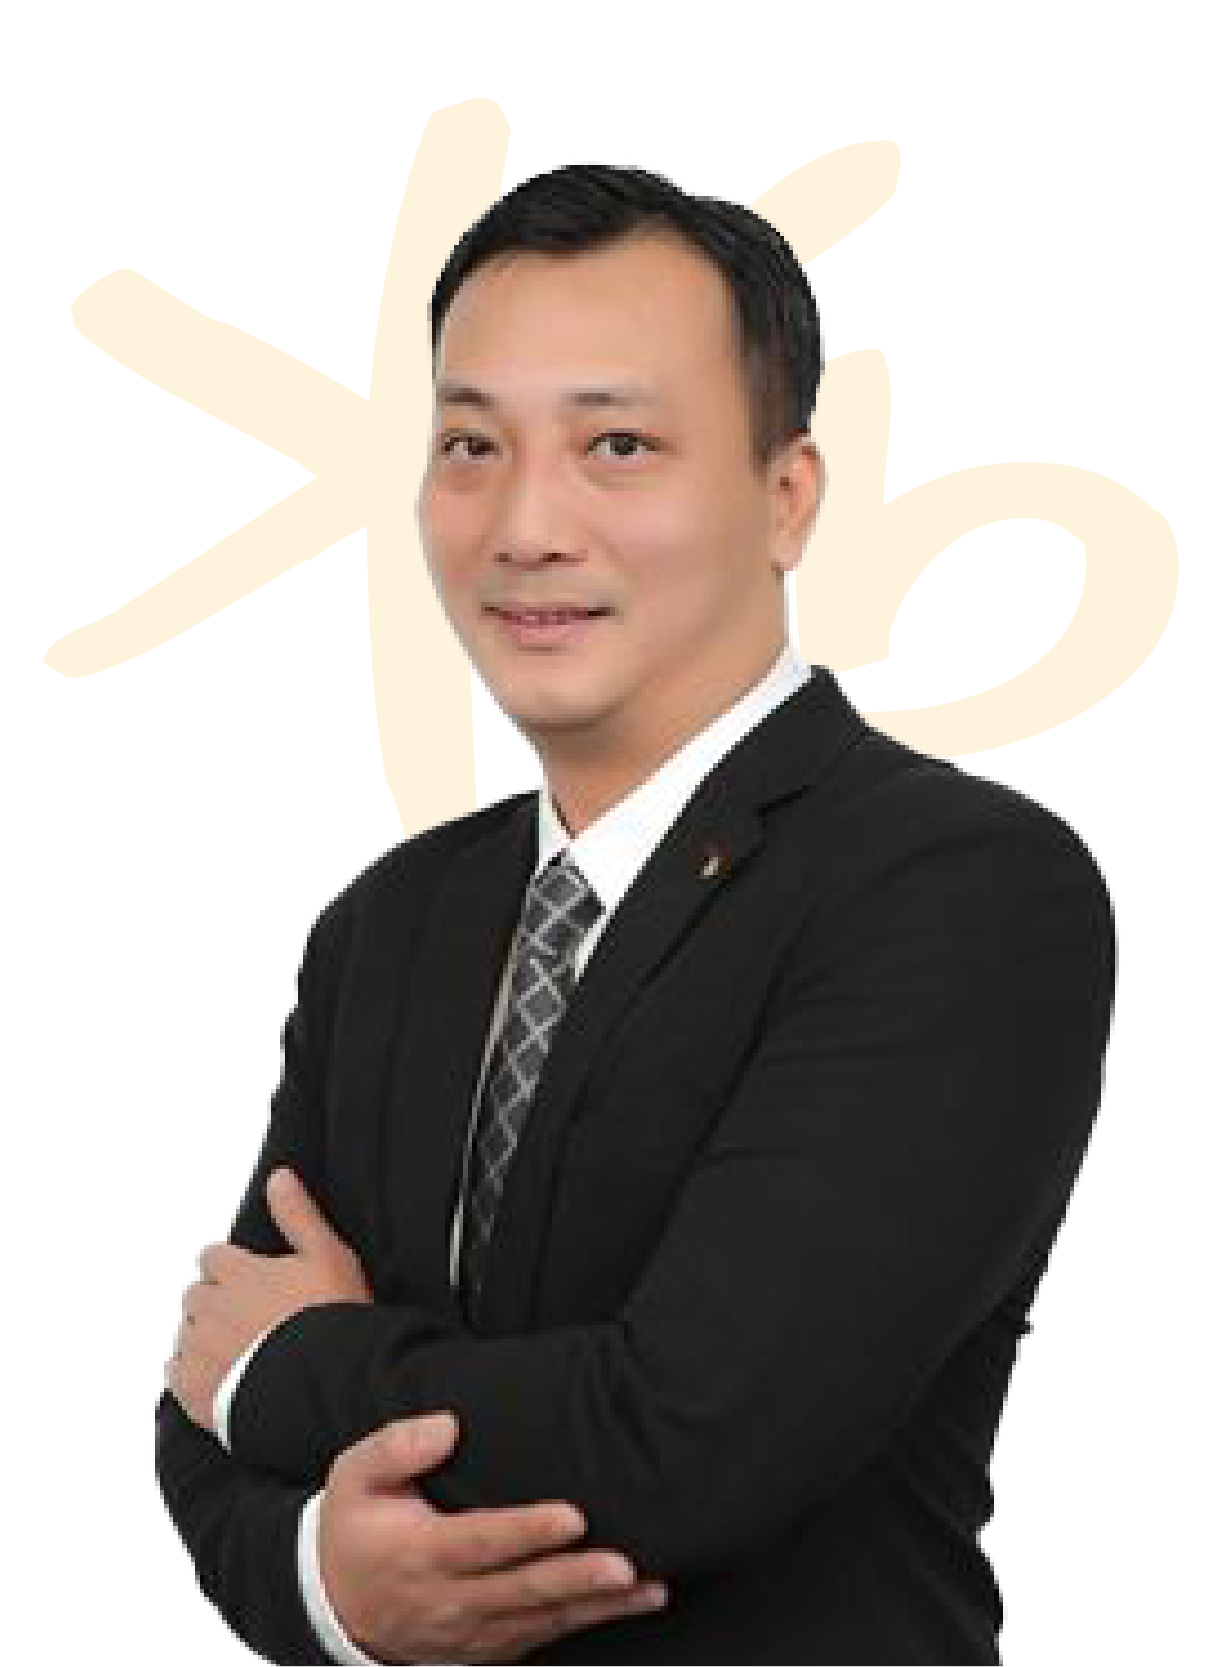 Mr. Vu Tuan Viet